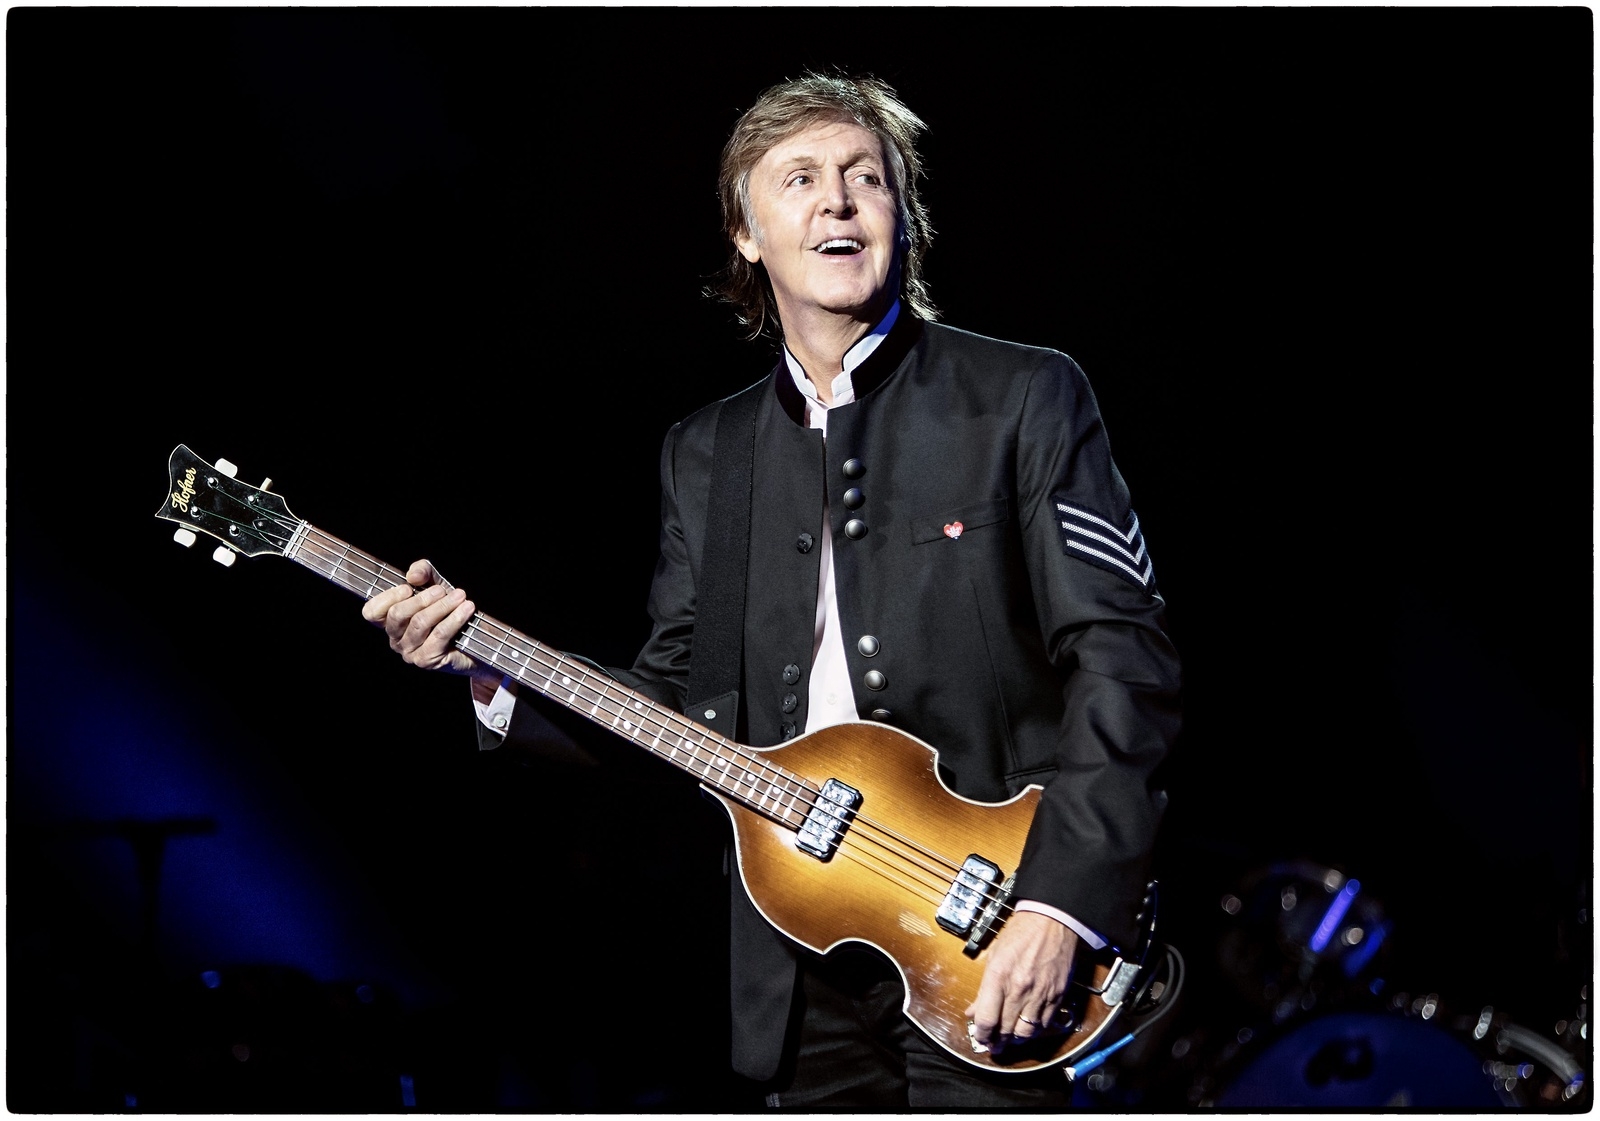 Paul McCartney övertygade mest mot slutet i konserten på Royal Arena i Köpenhamn på fredagen. Foto: MJ KIM/MPL Communications